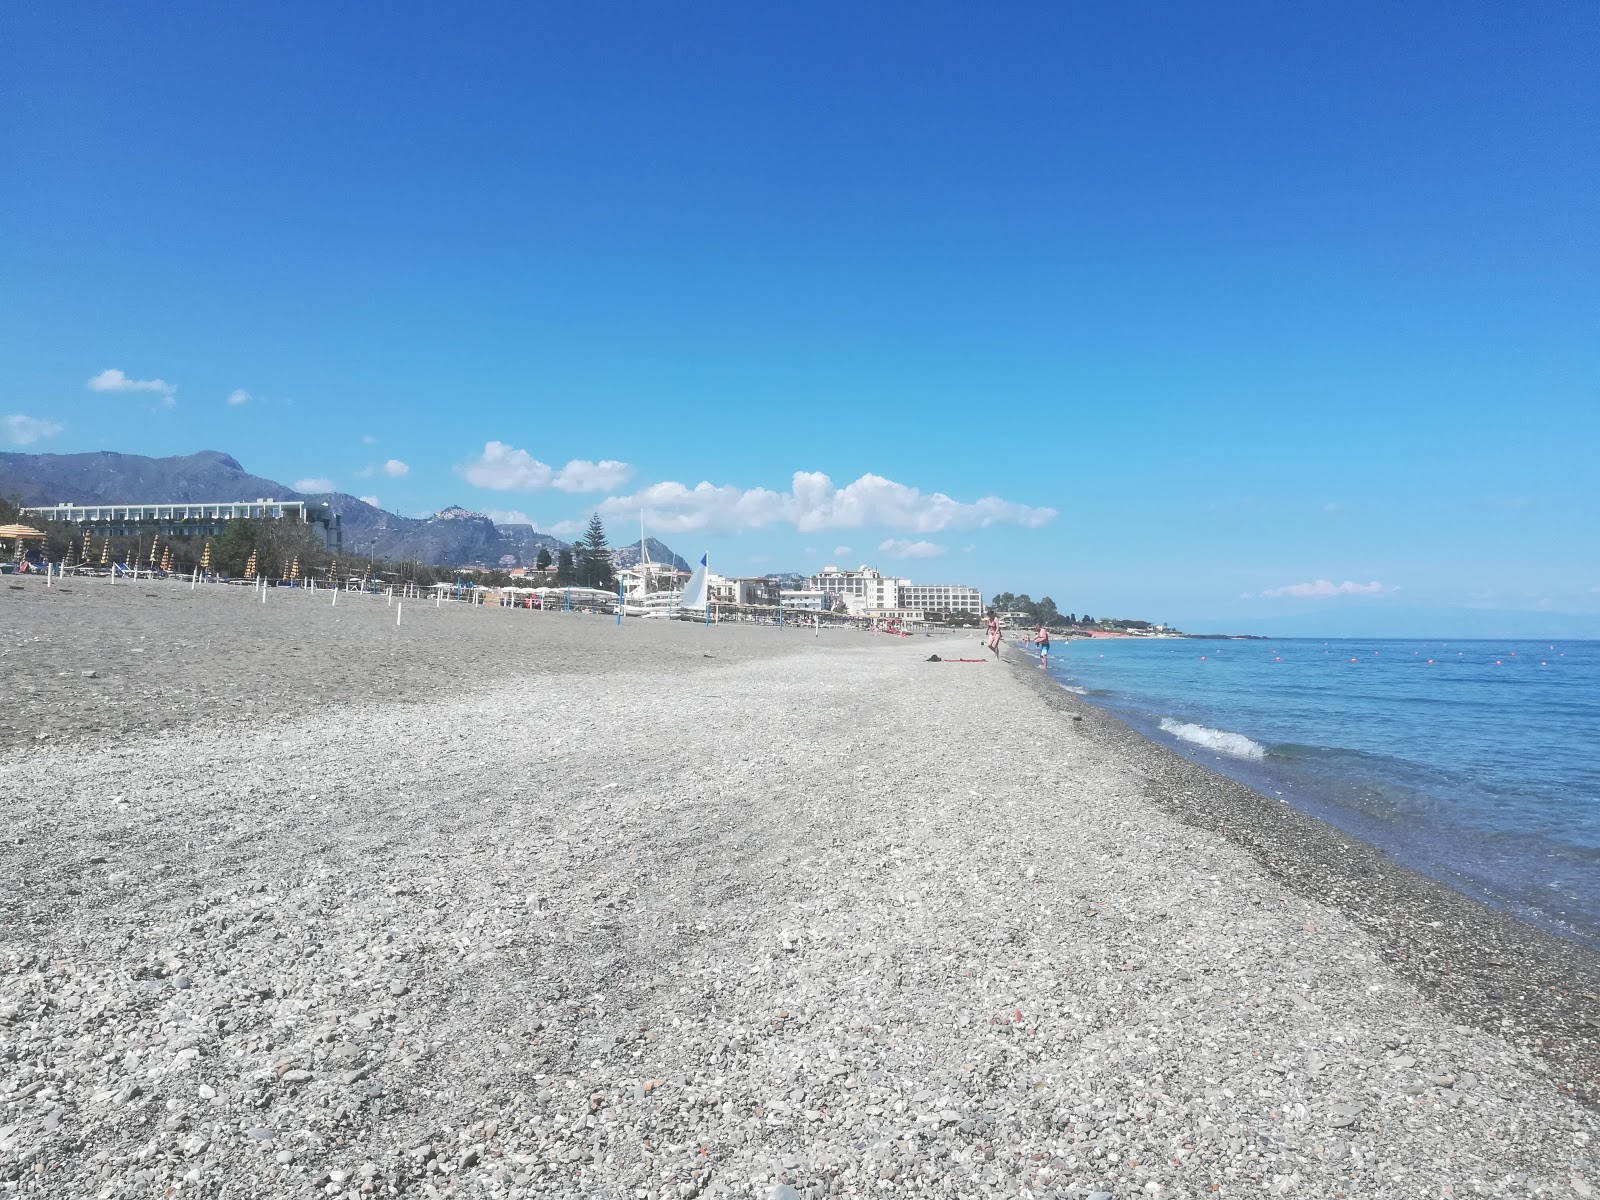 Recanati beach II'in fotoğrafı çok temiz temizlik seviyesi ile